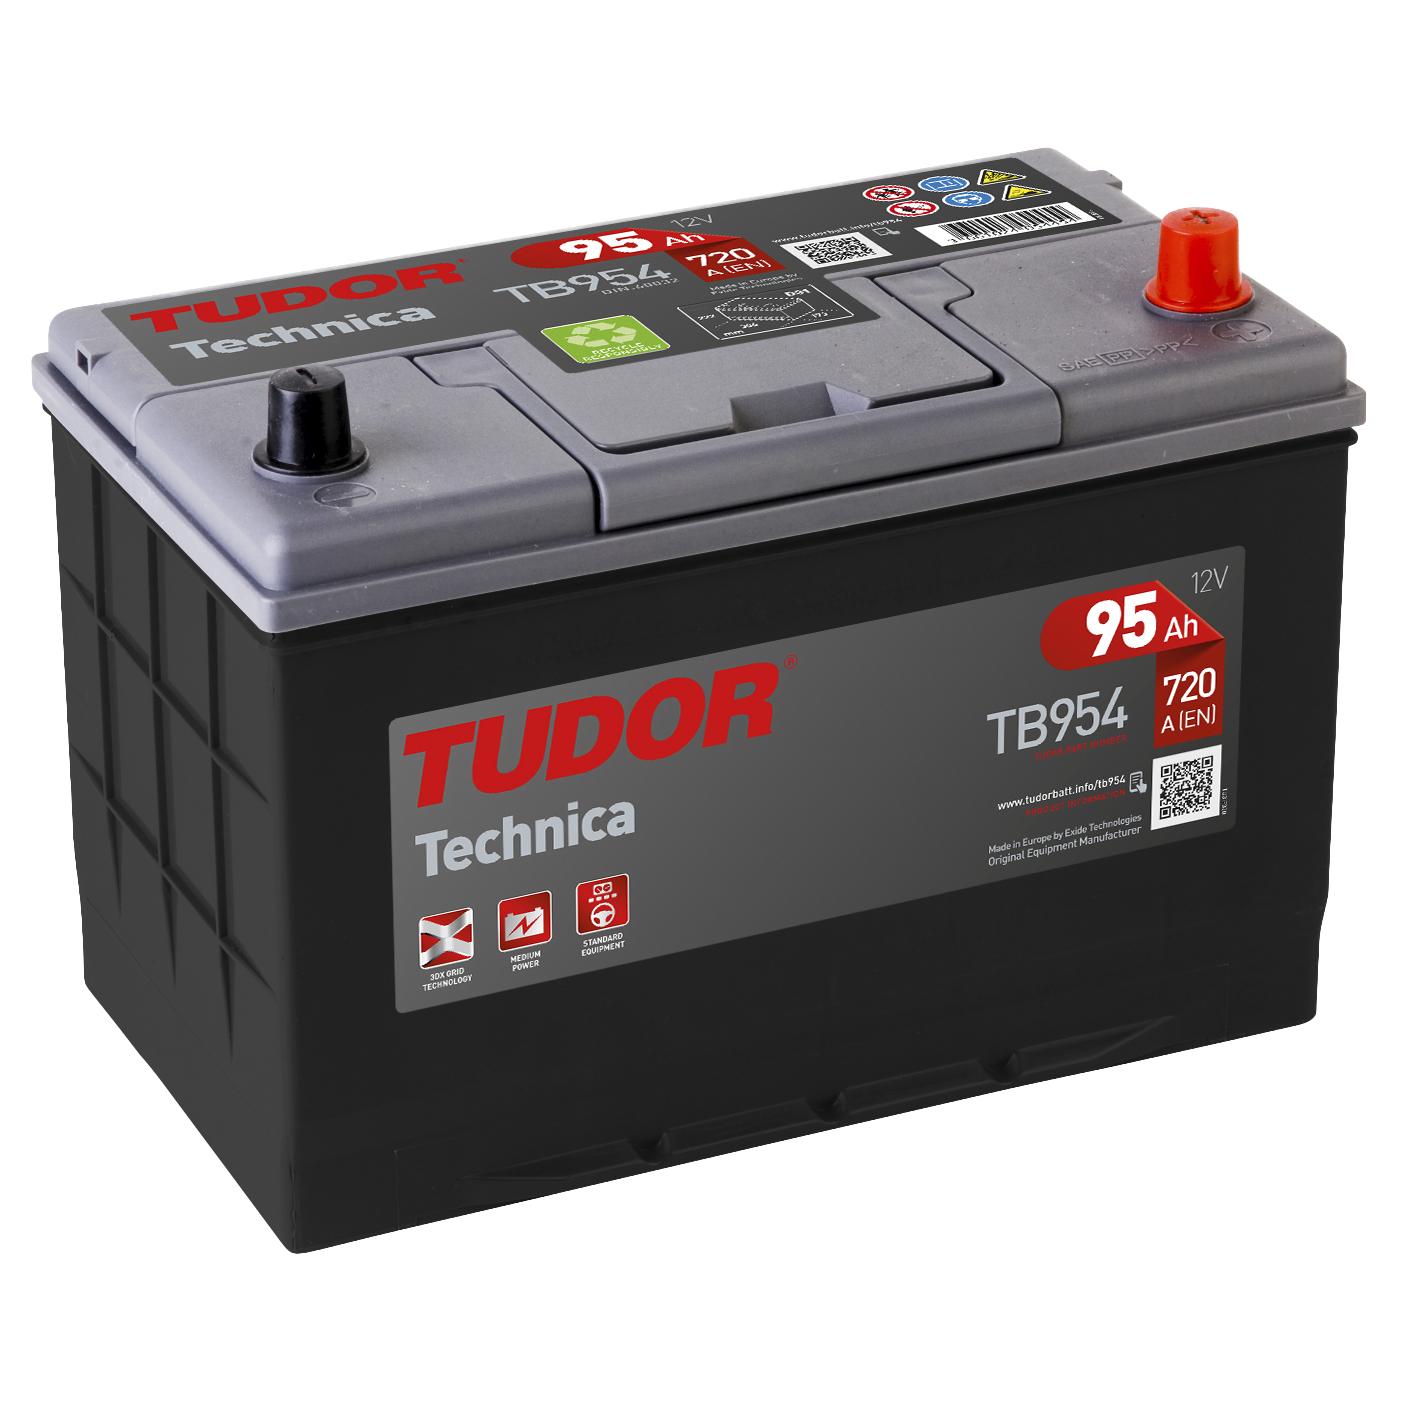 Tudor - Batería Tudor TB954 95.0 G7 para Vehículos - Alta Calidad